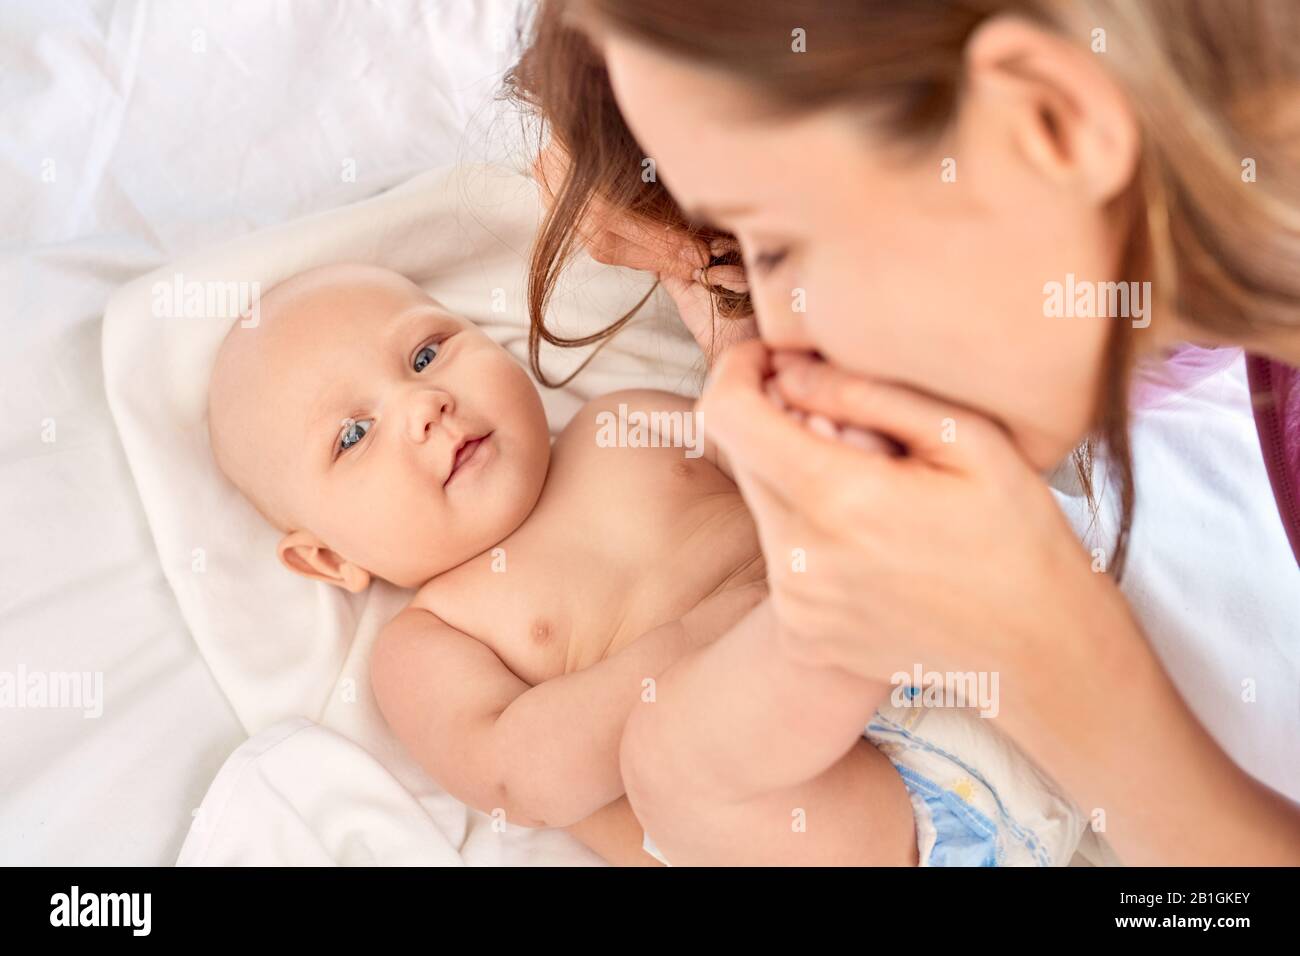 Junge Erwachsene Mutter küsst Füße ihr kleines neugeborenes Baby Stockfoto